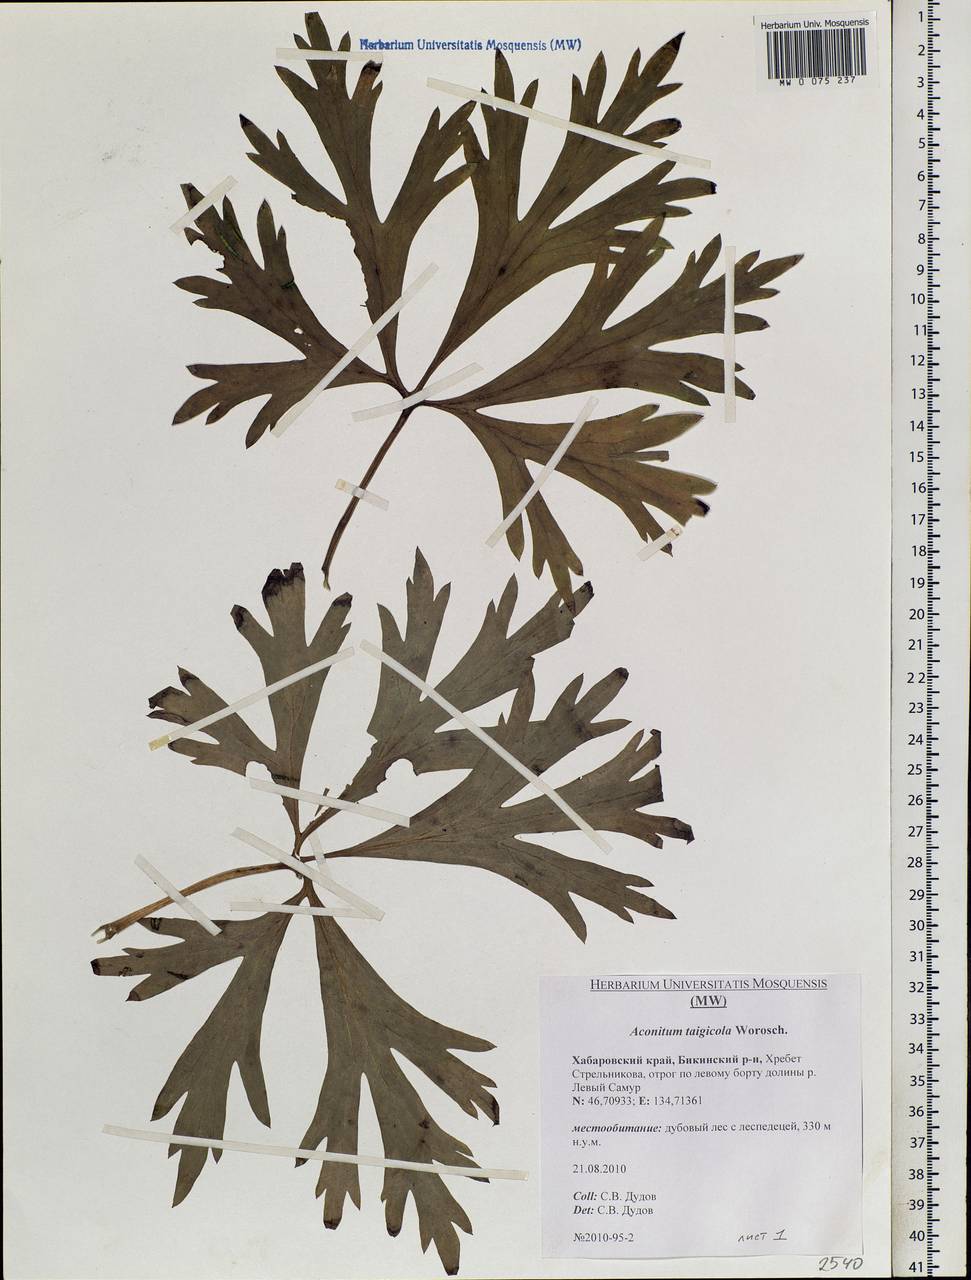 Aconitum jaluense subsp. taigicola (Vorosch.) Vorosch., Siberia, Russian Far East (S6) (Russia)